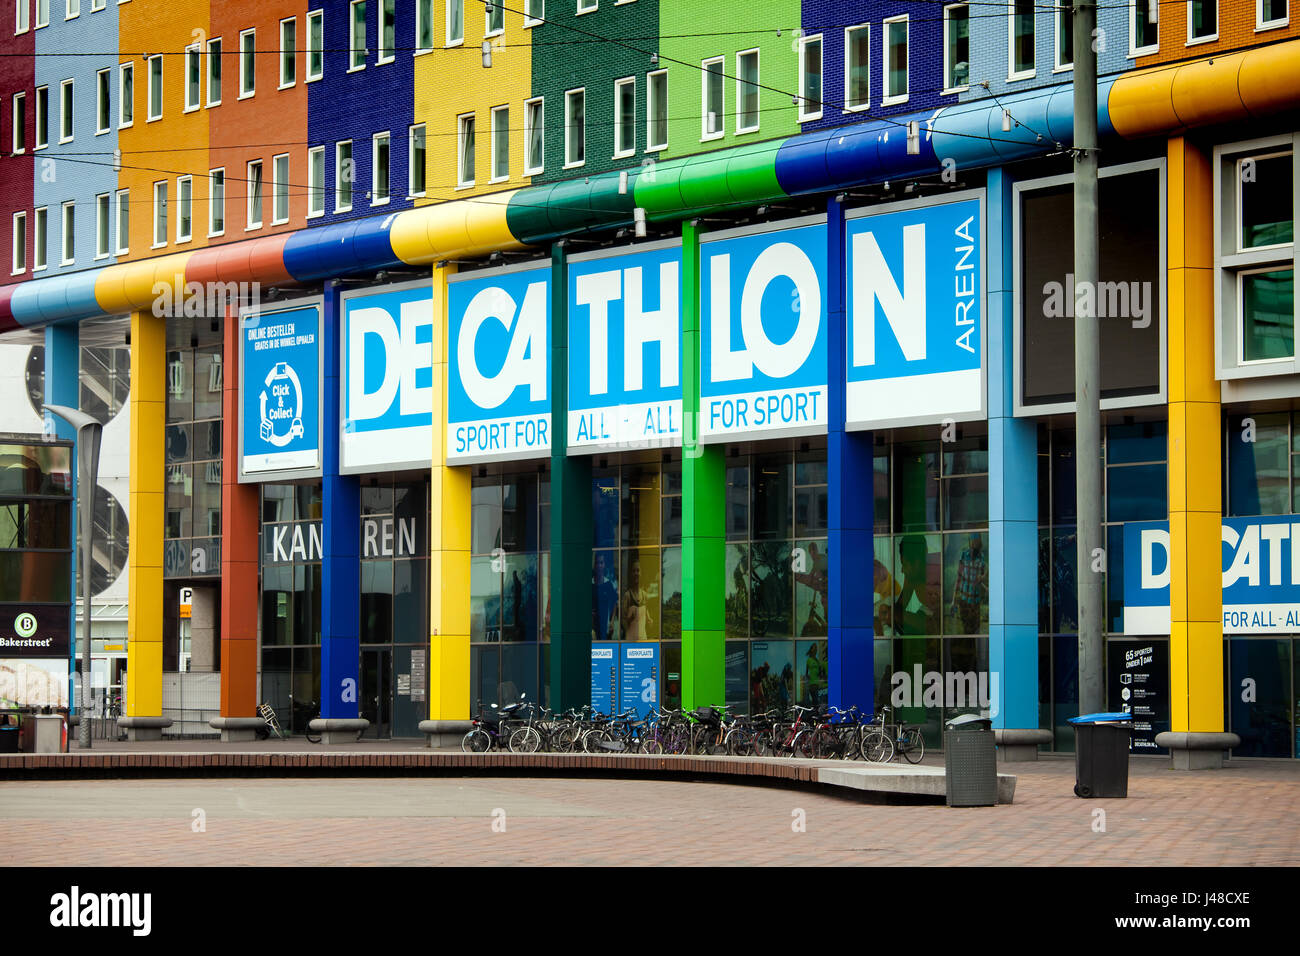 MediaMarkt and Decathlon in Amsterdam sold